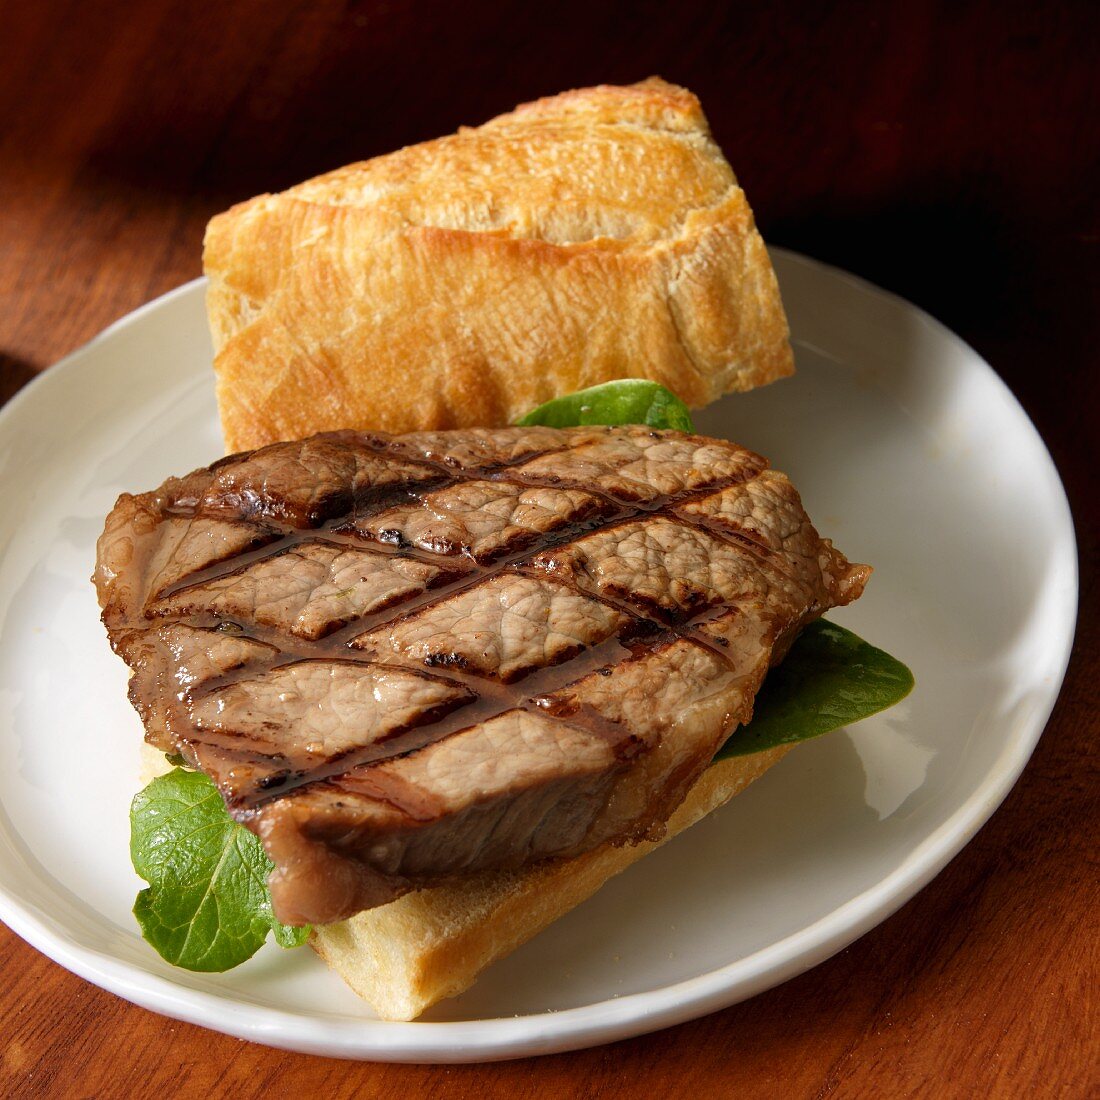 Grilled sirloin beef sandwich on artisanal bread